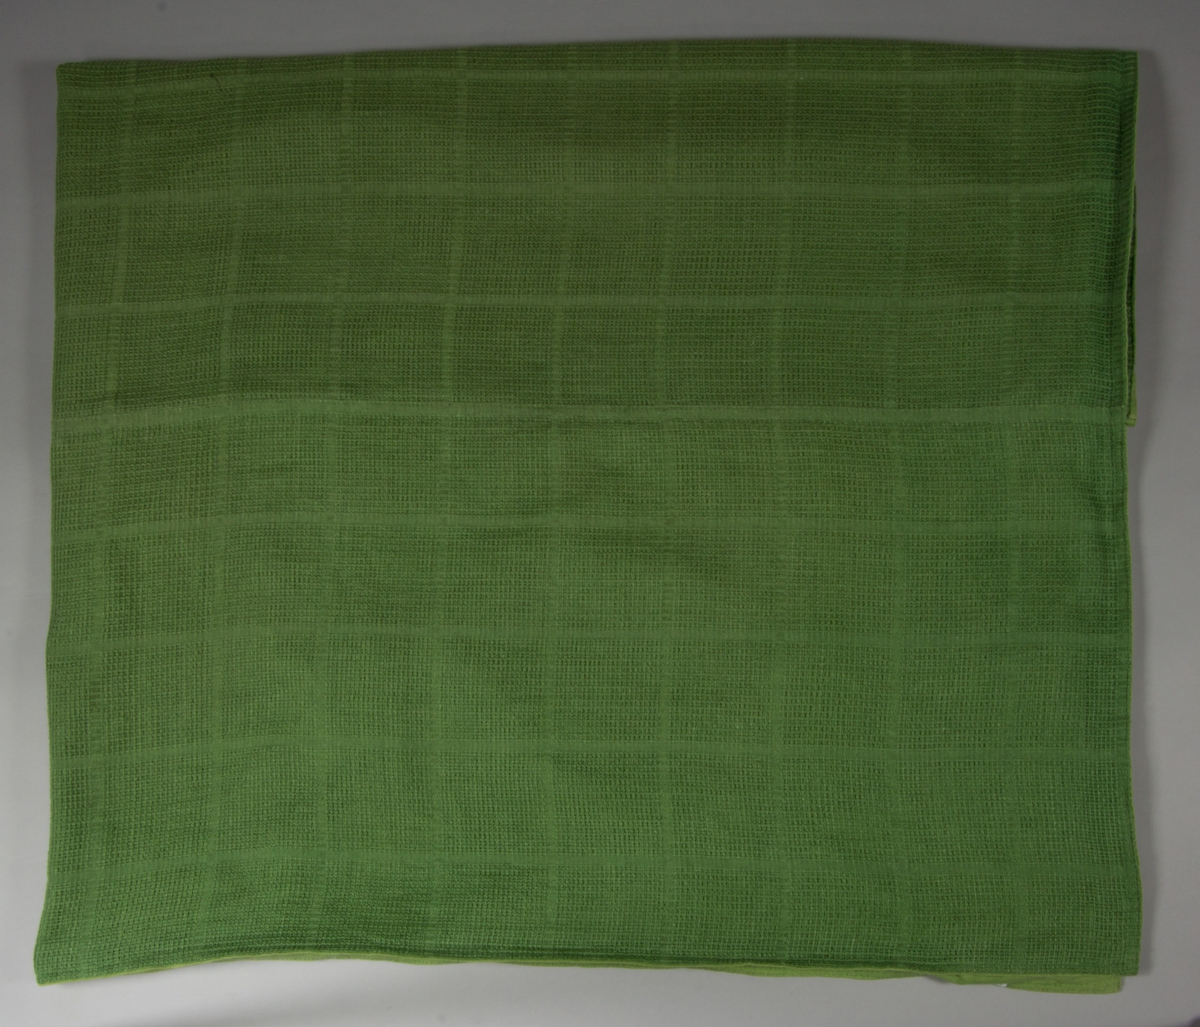 Överkast till säng. Tillverkat av handvävt linnetyg., mörkgrönt, vävt i stramaljbindning, myggtjäll med stora rutor. Två våder hopsydda på mitten, hörnen formade för att passa omstopp och nedhängande del fram. Sidorna, nedre kanten fram och den tänkta viklinjen för nerhänget kantade med gröna linneband. Överkastet är helfodrat med grönt linnetyg i tuskaft.